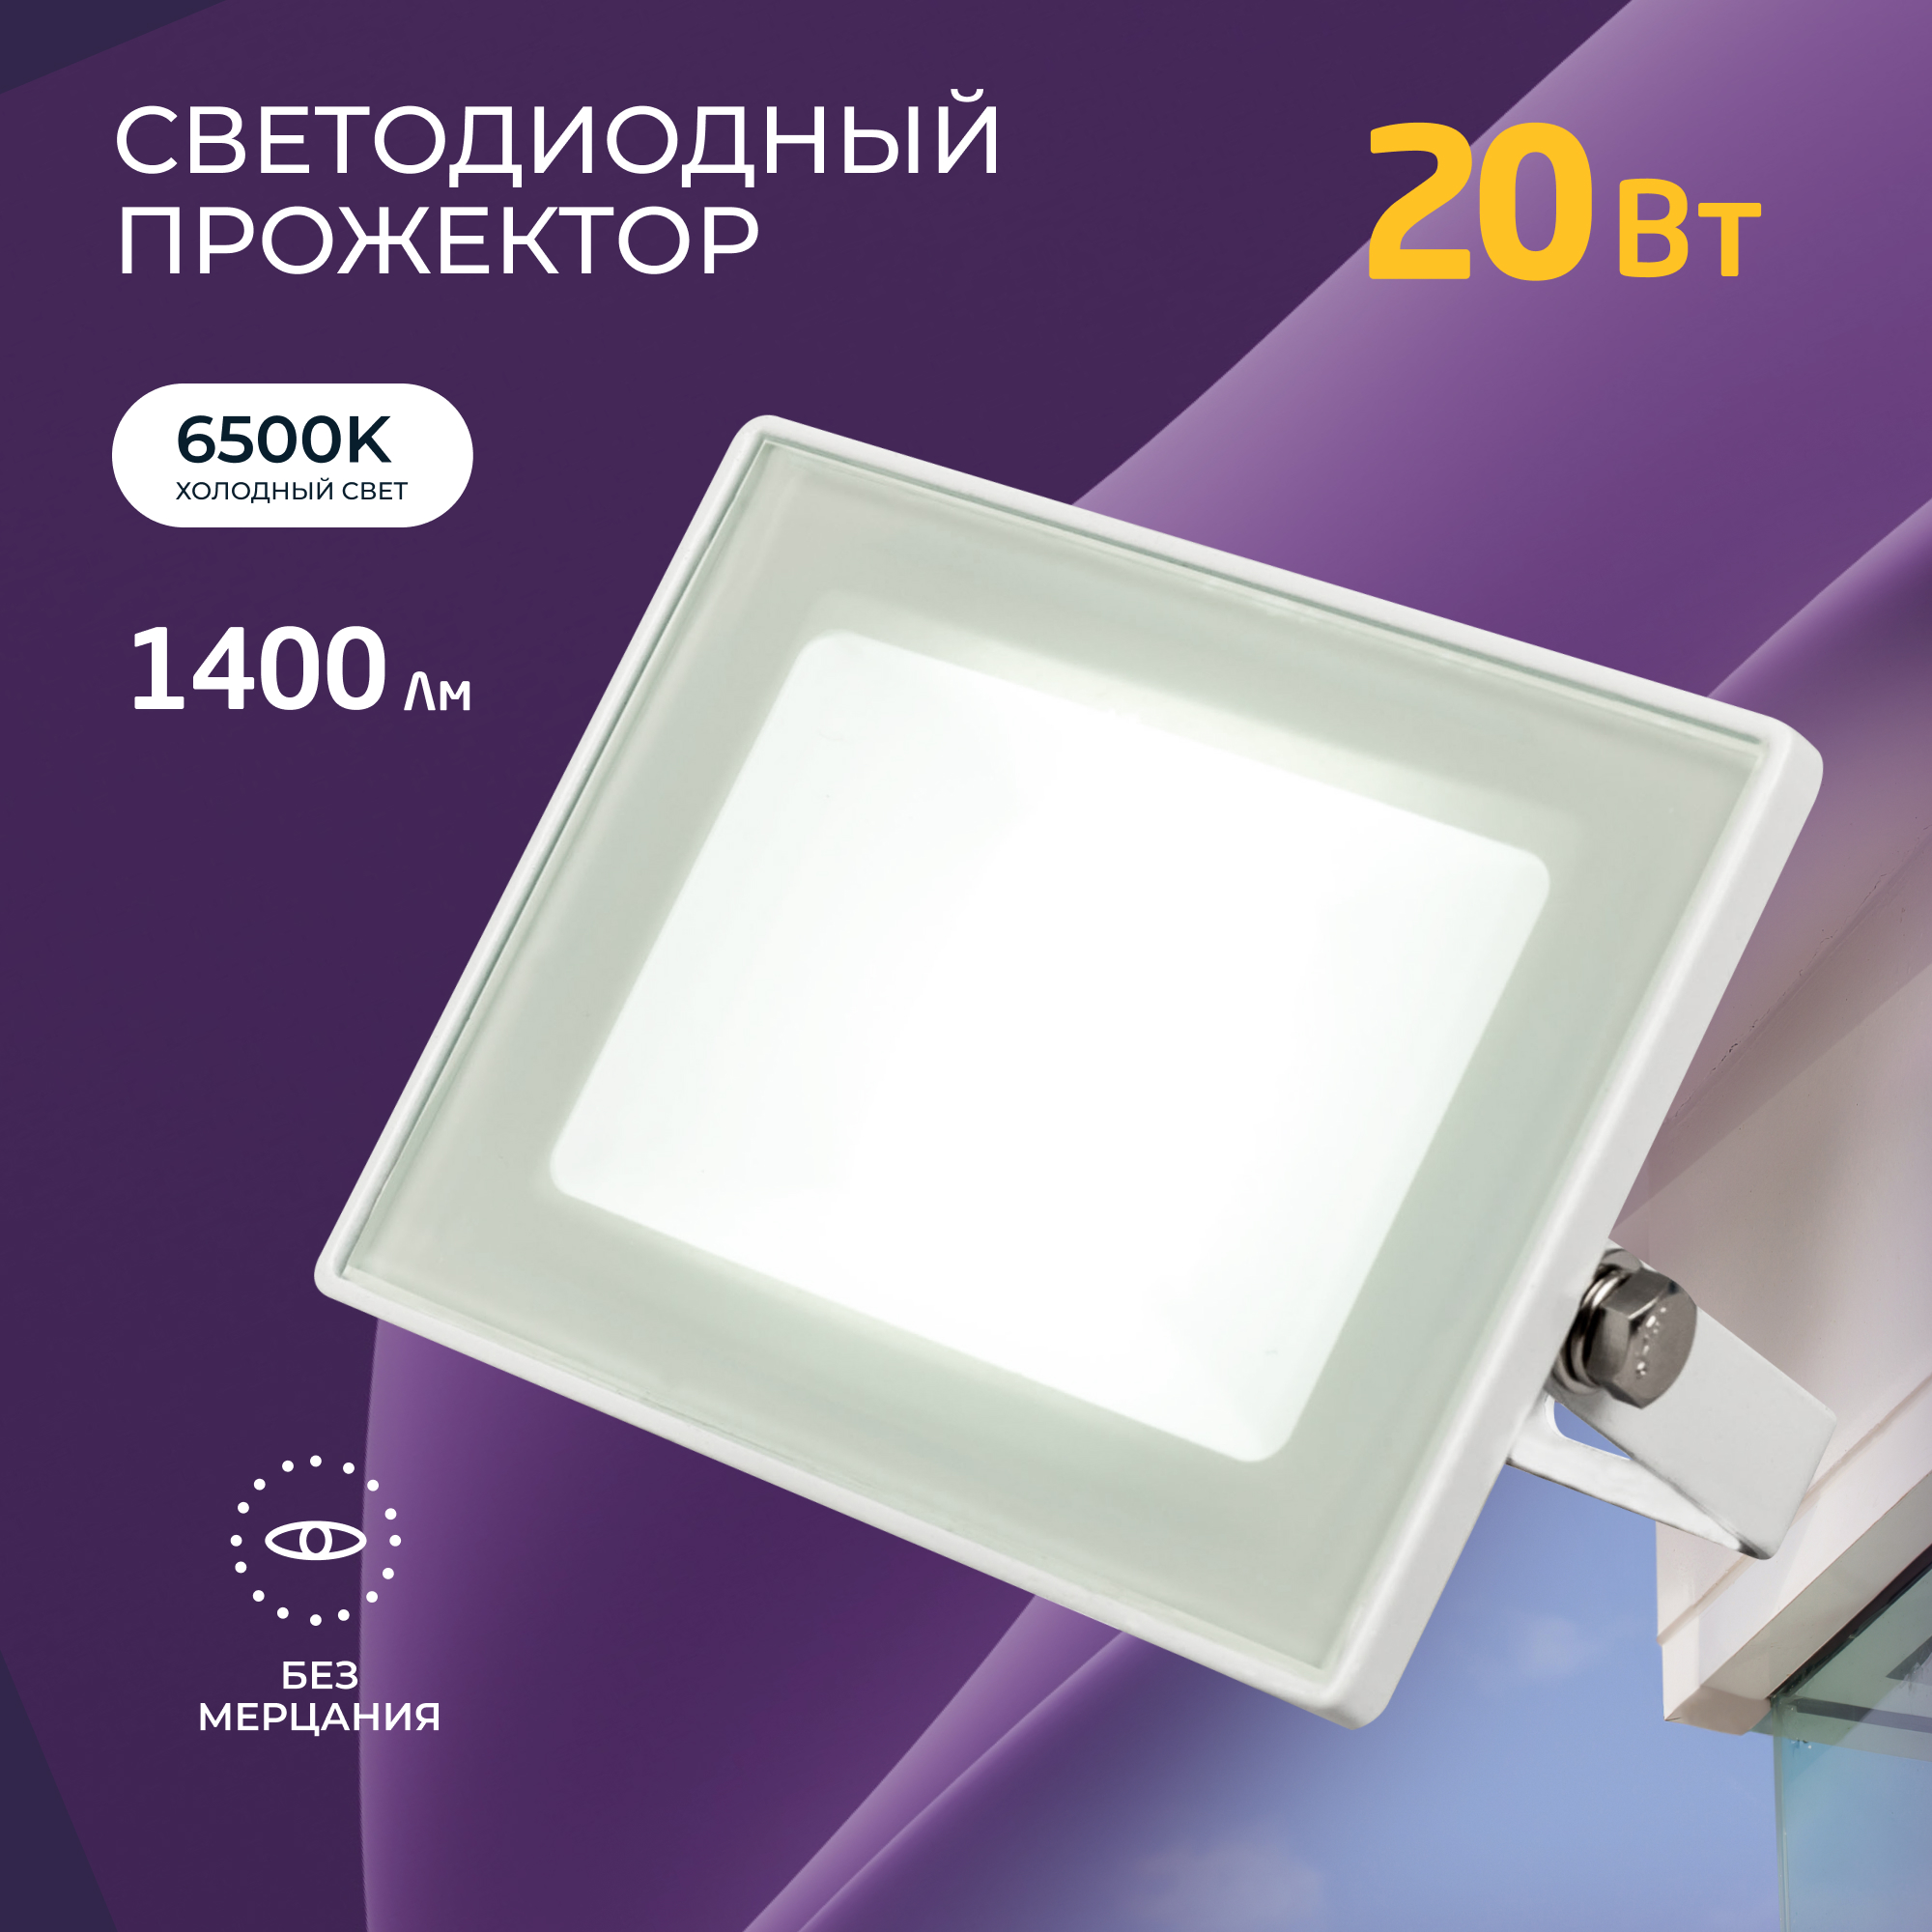 Прожектор светодиодный HIPER HF-007 20 Вт, IP65, 1400 Лм, 6500K холодный белый свет